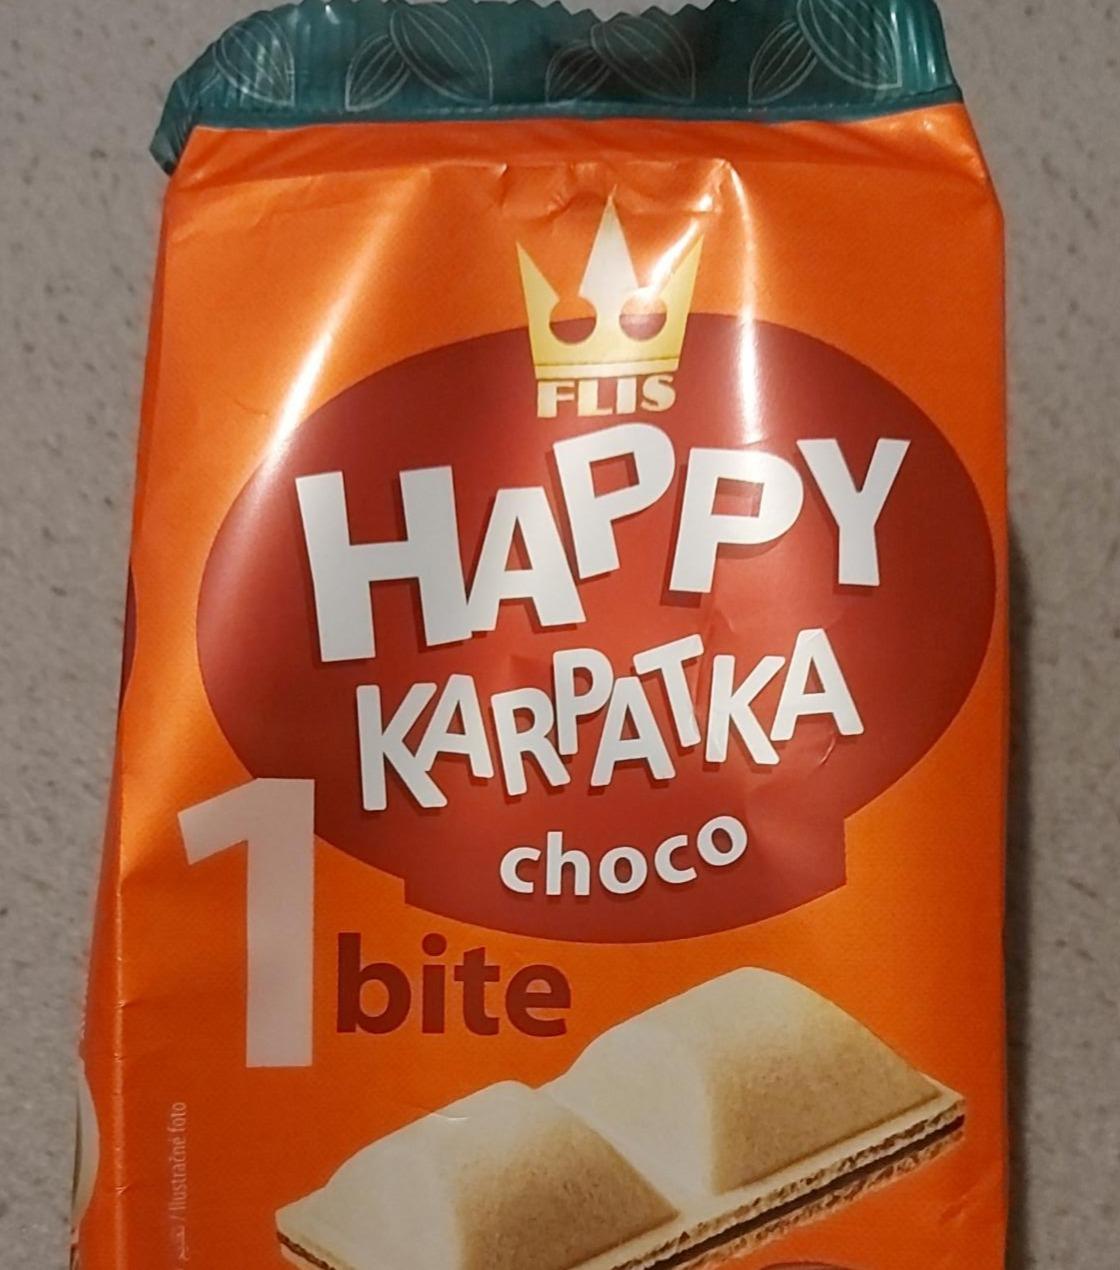 Fotografie - Happy Karpatka choco Flis